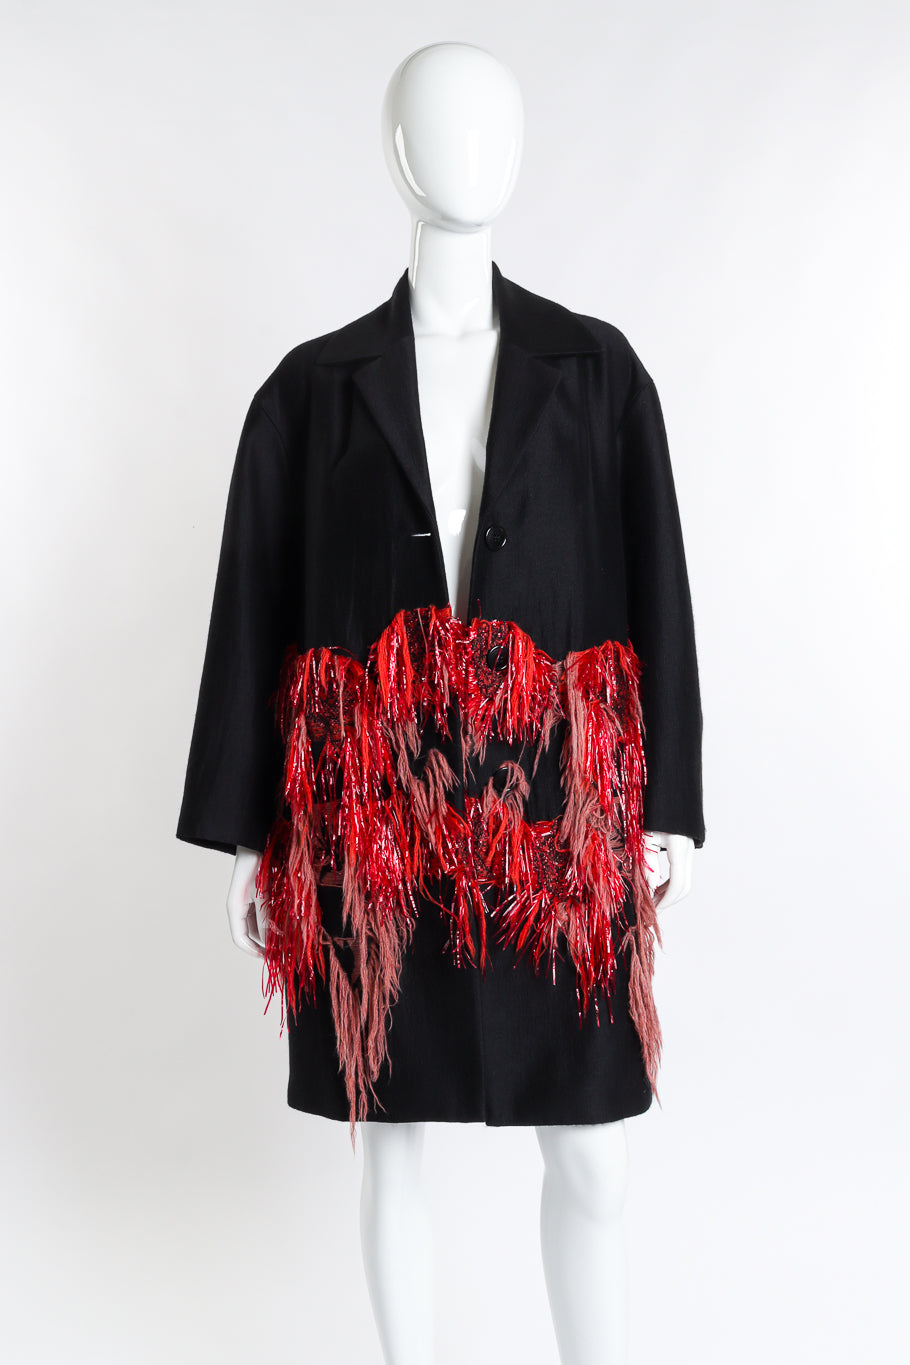 Dries Van Noten Tassel & Tinsel Feature Coat front on mannequin @recess la